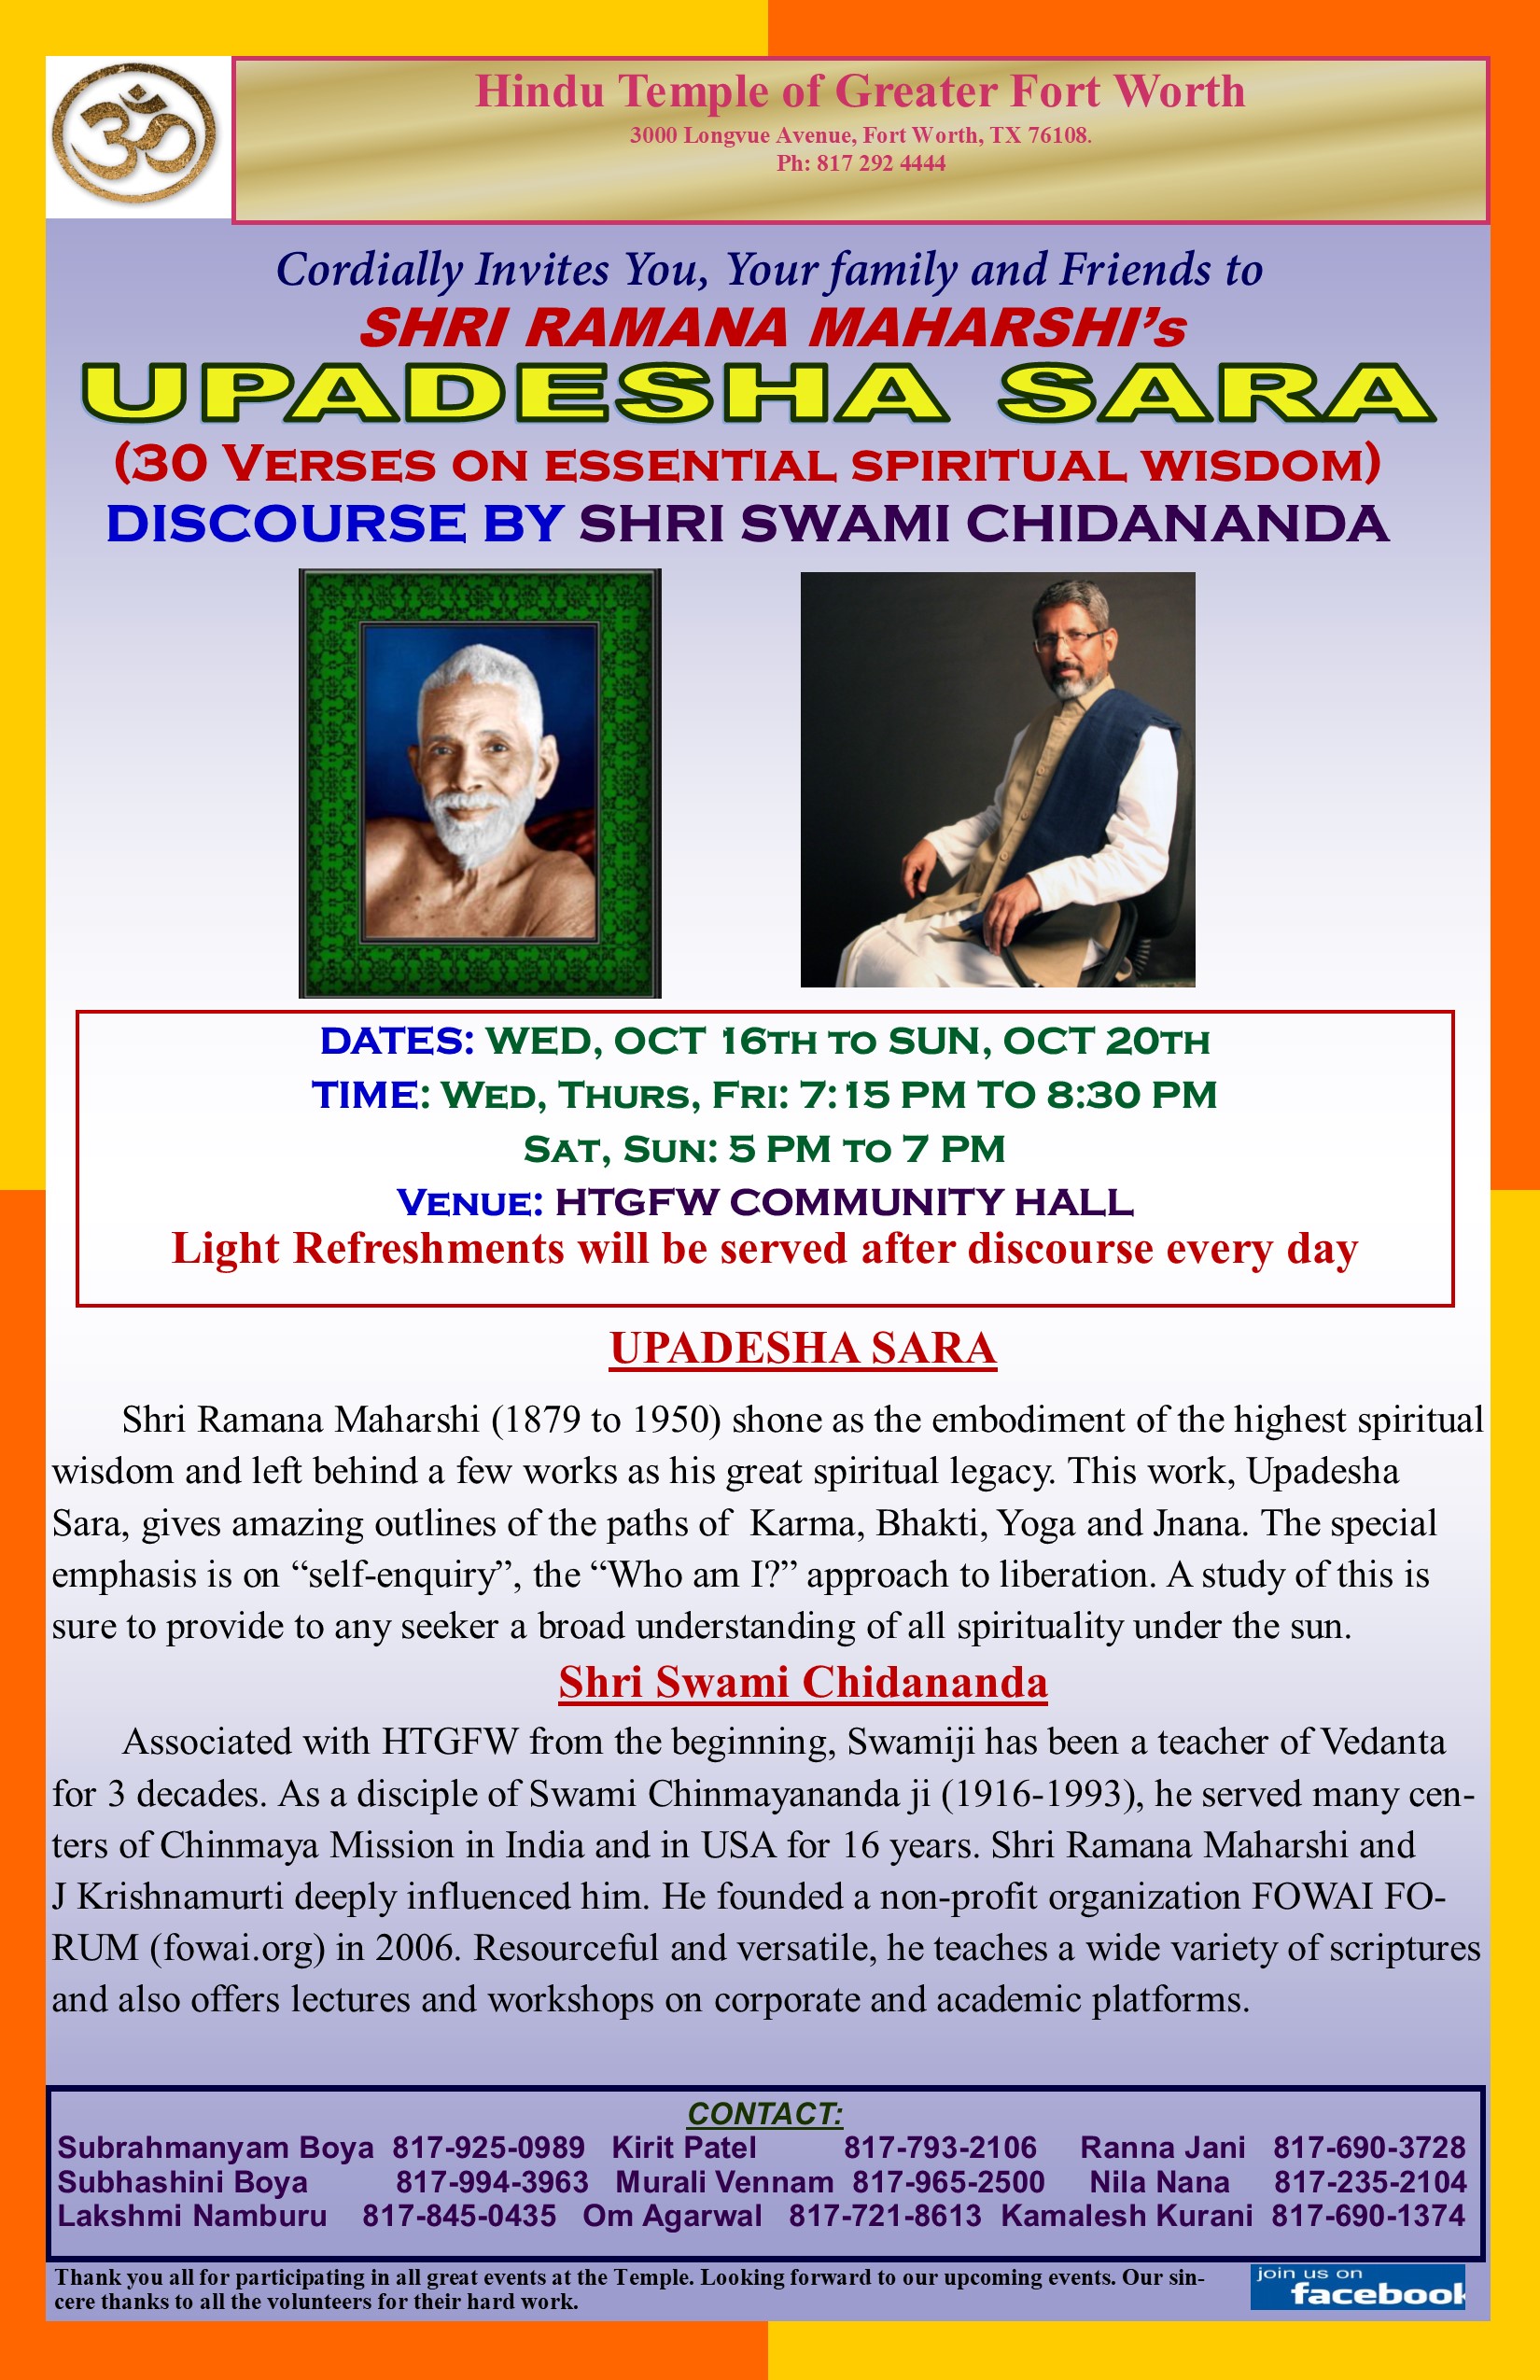 Upadesha Sara - Discourse by Shri Swami Chidananda